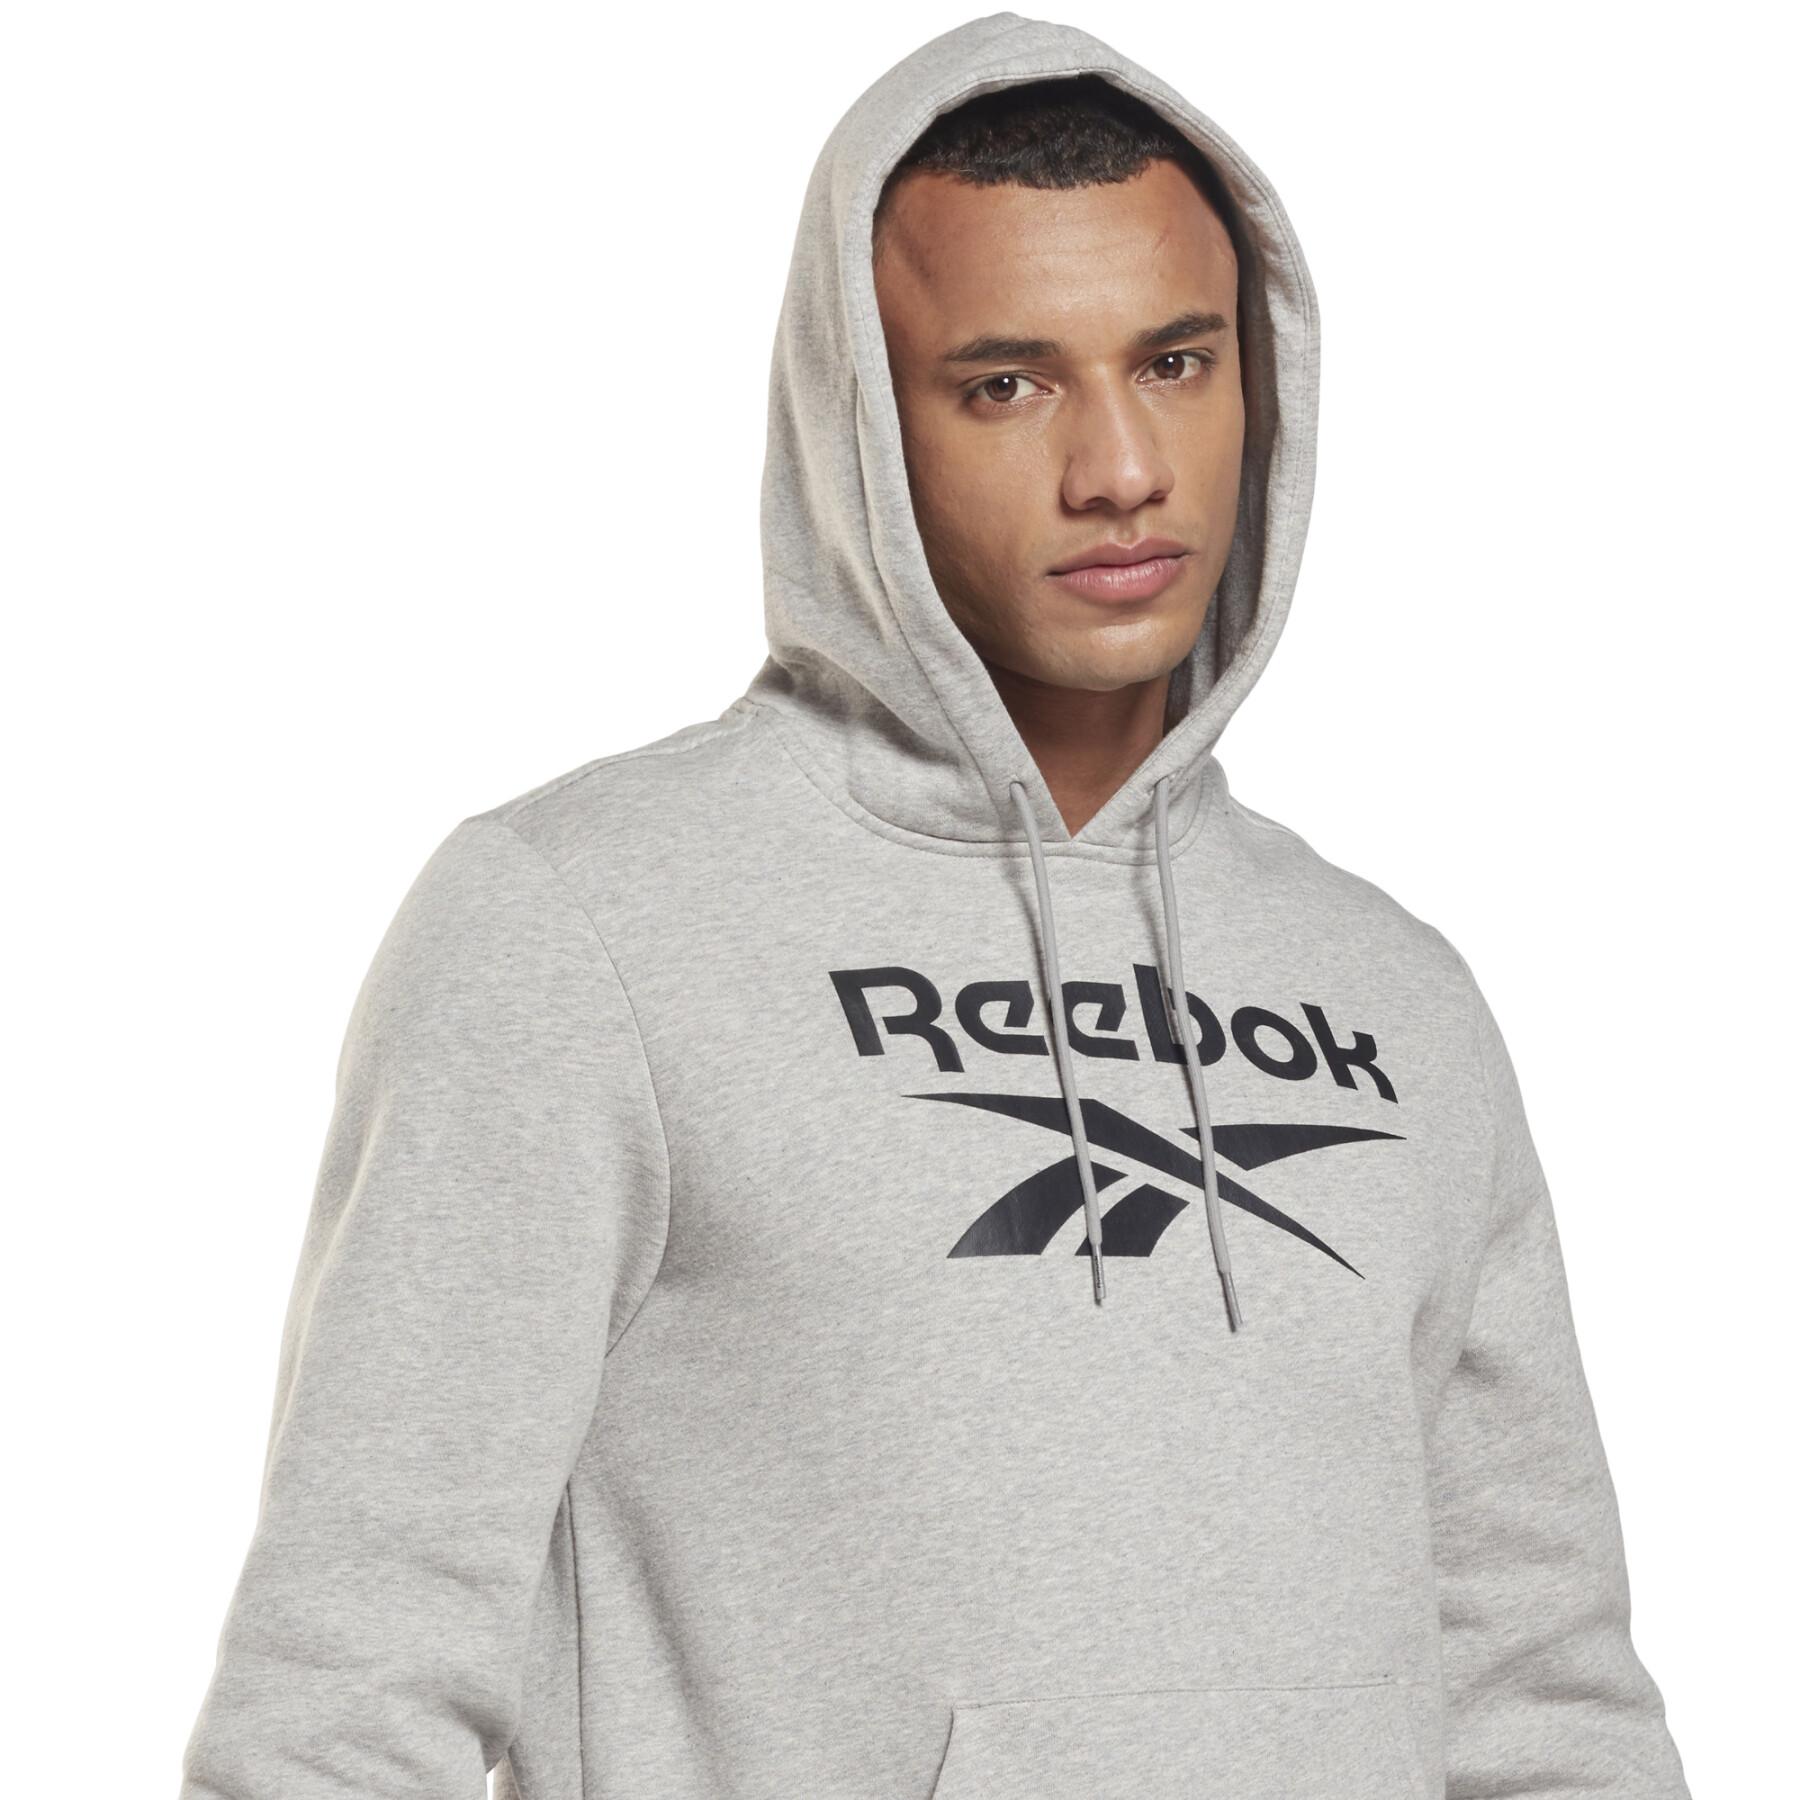 Fleece hoodie Reebok Identity